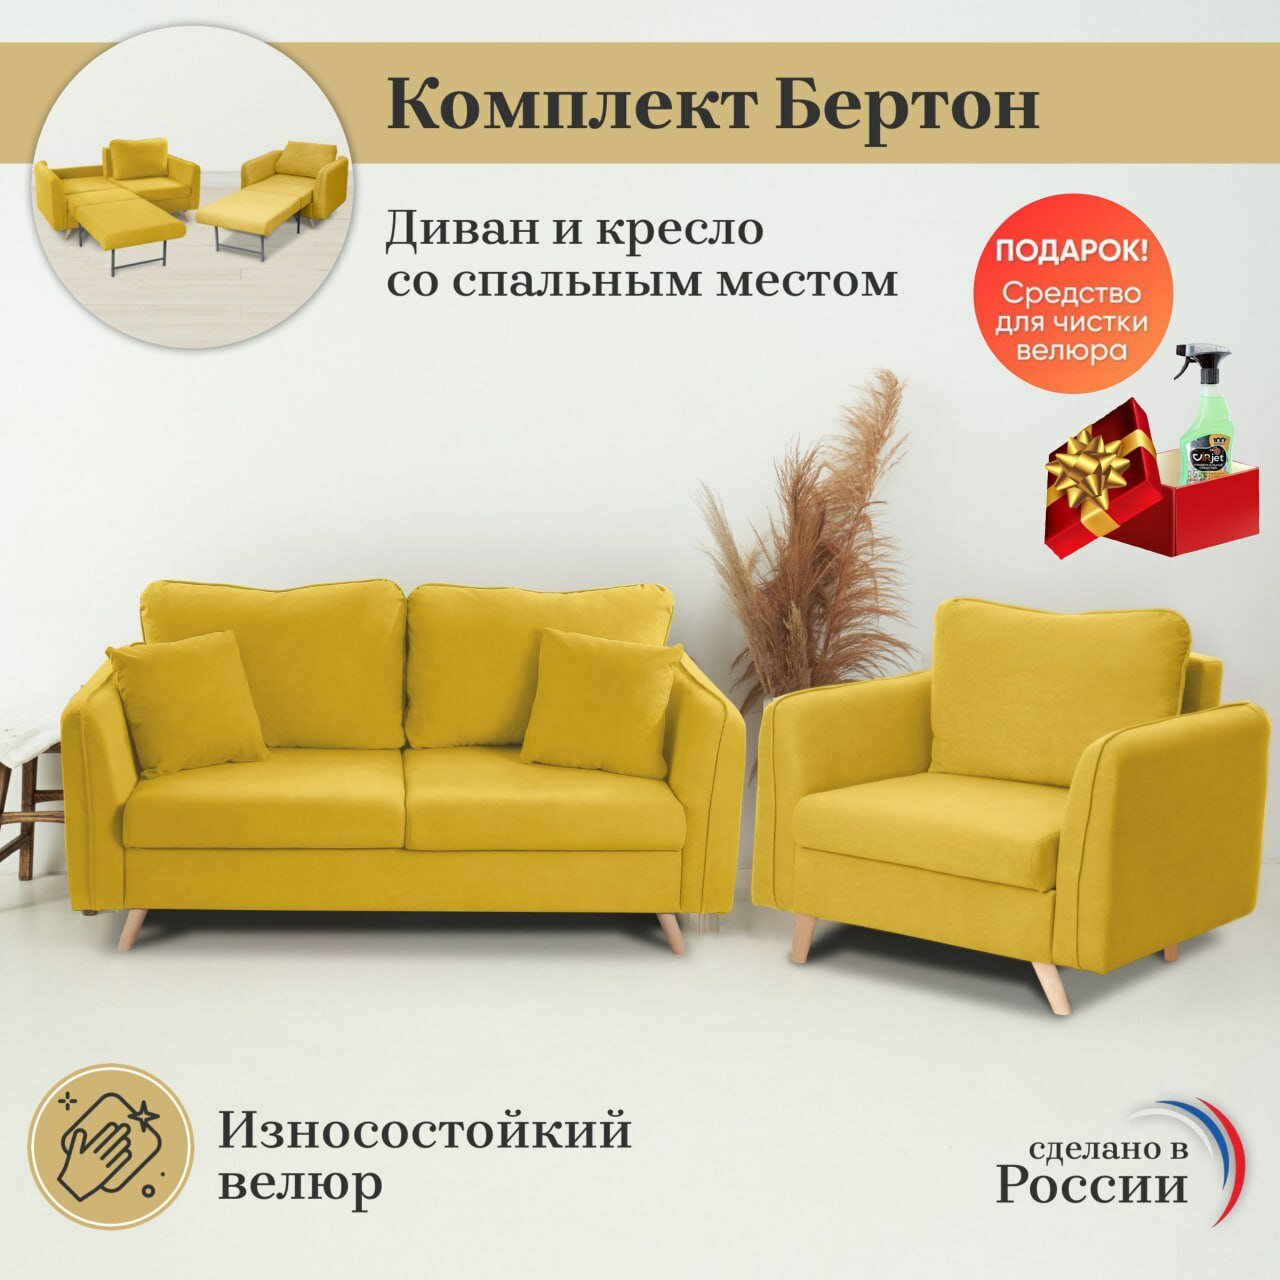 Комплект мягкой мебели диван и кресло Brendoss 330 цвет желтый